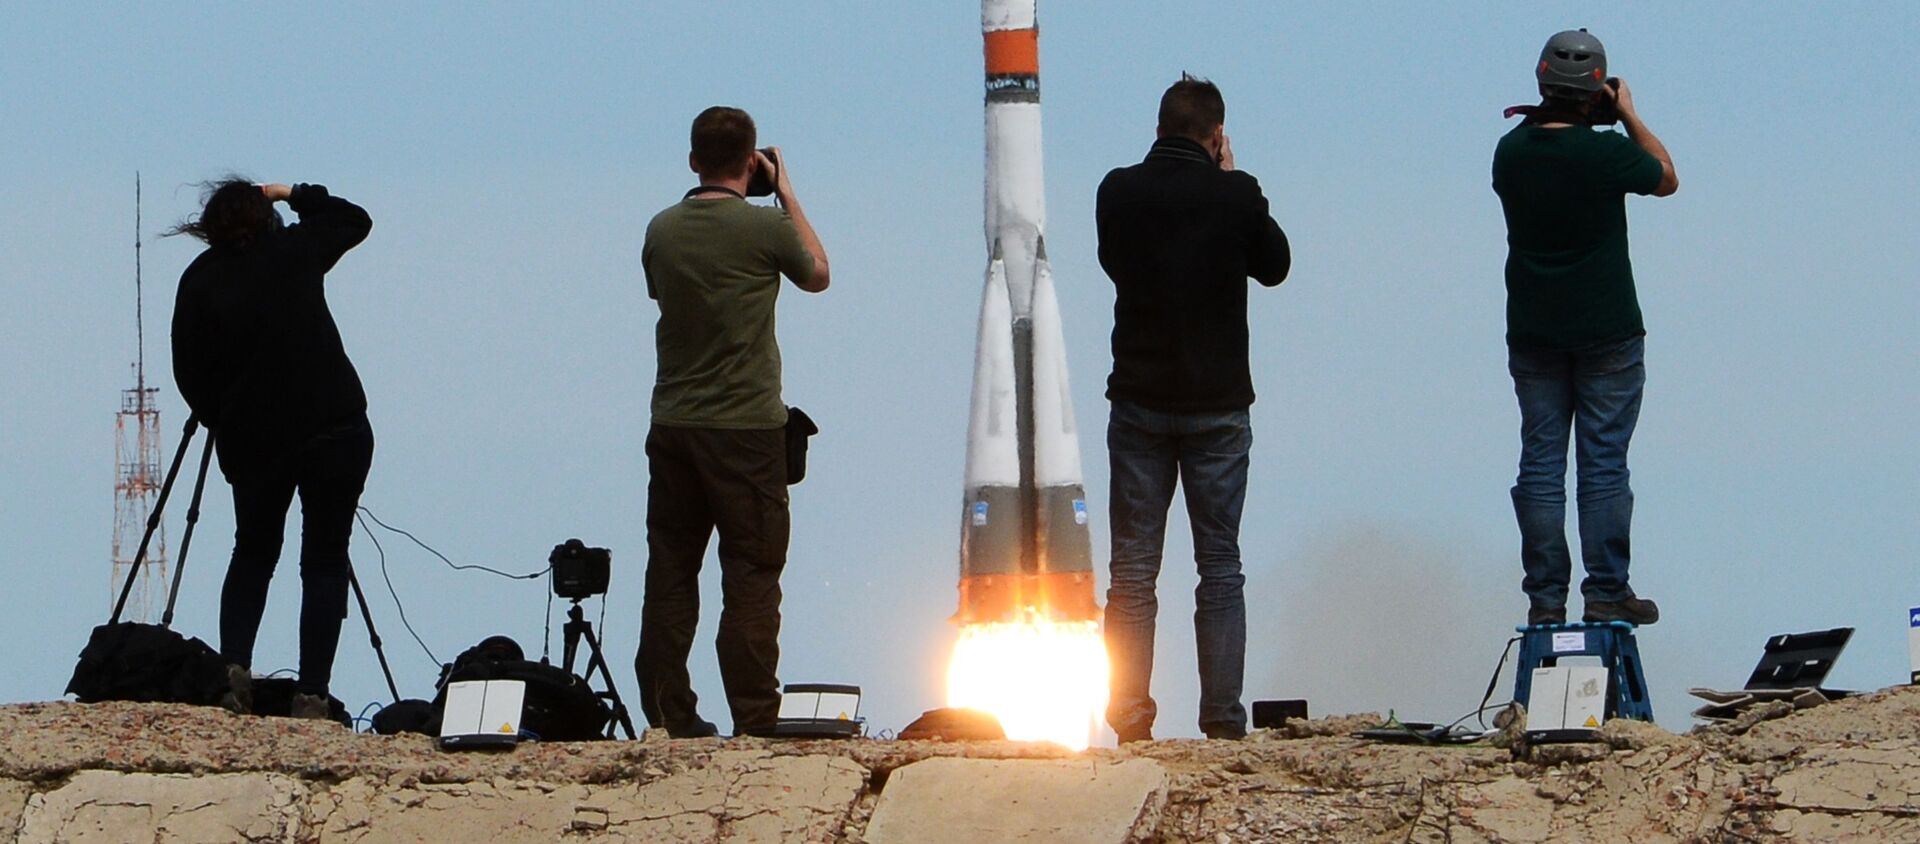 انطلق الصاروخ الناقل سويوز – إف - غي اليوم الخميس 20 أبريل/ نيسان، إلى محطة الفضاء الدولية، مقلا المركبة المأهولة سويوز ام سي - 04 - سبوتنيك عربي, 1920, 23.03.2021